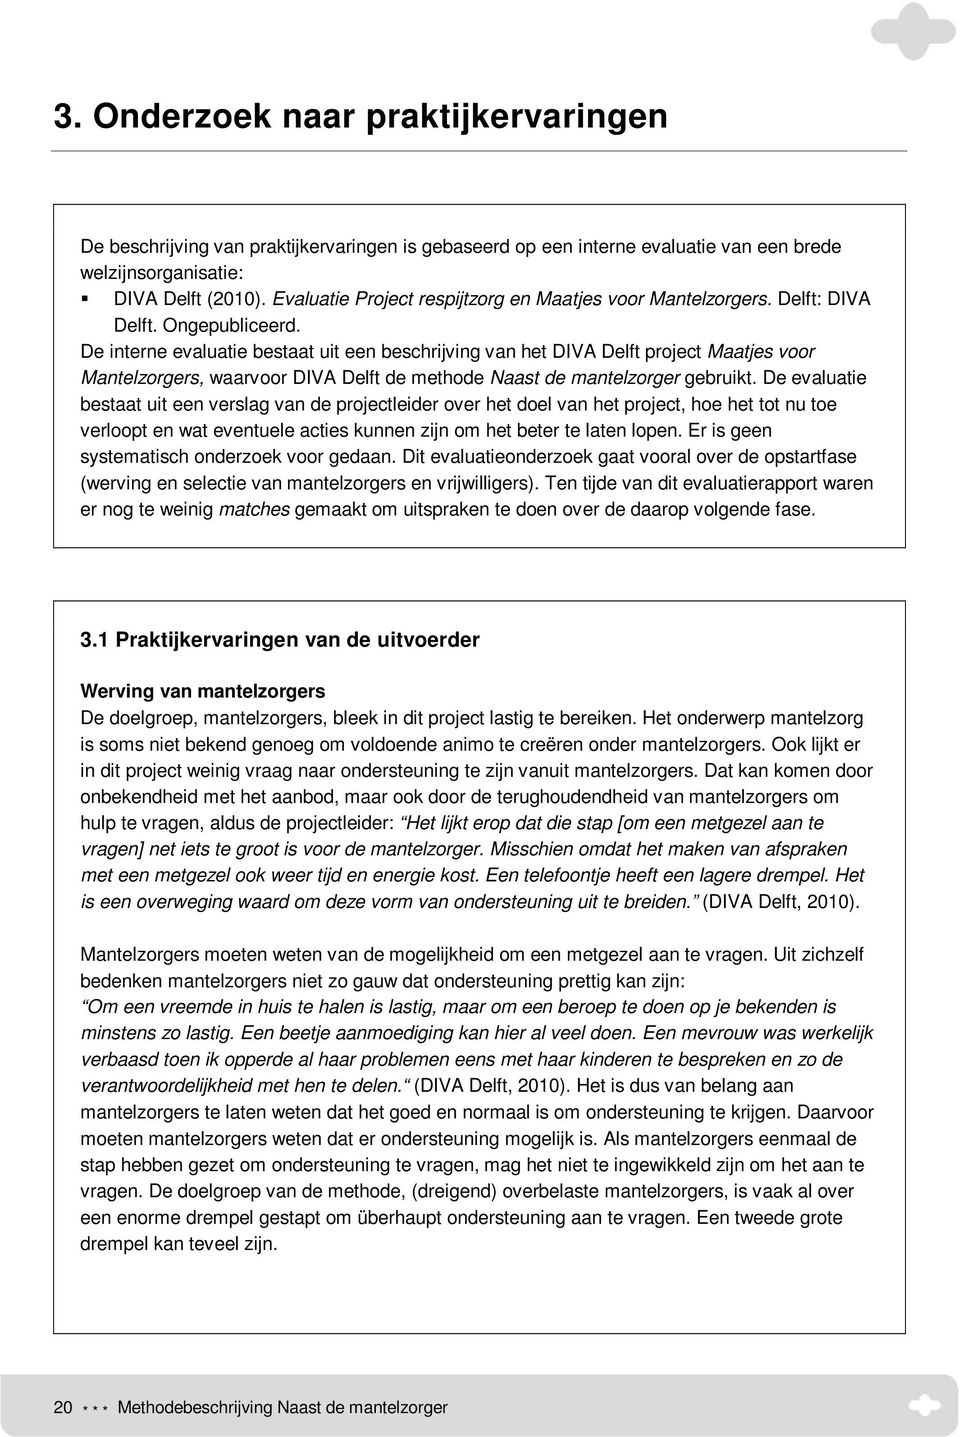 De interne evaluatie bestaat uit een beschrijving van het DIVA Delft project Maatjes voor Mantelzorgers, waarvoor DIVA Delft de methode Naast de mantelzorger gebruikt.